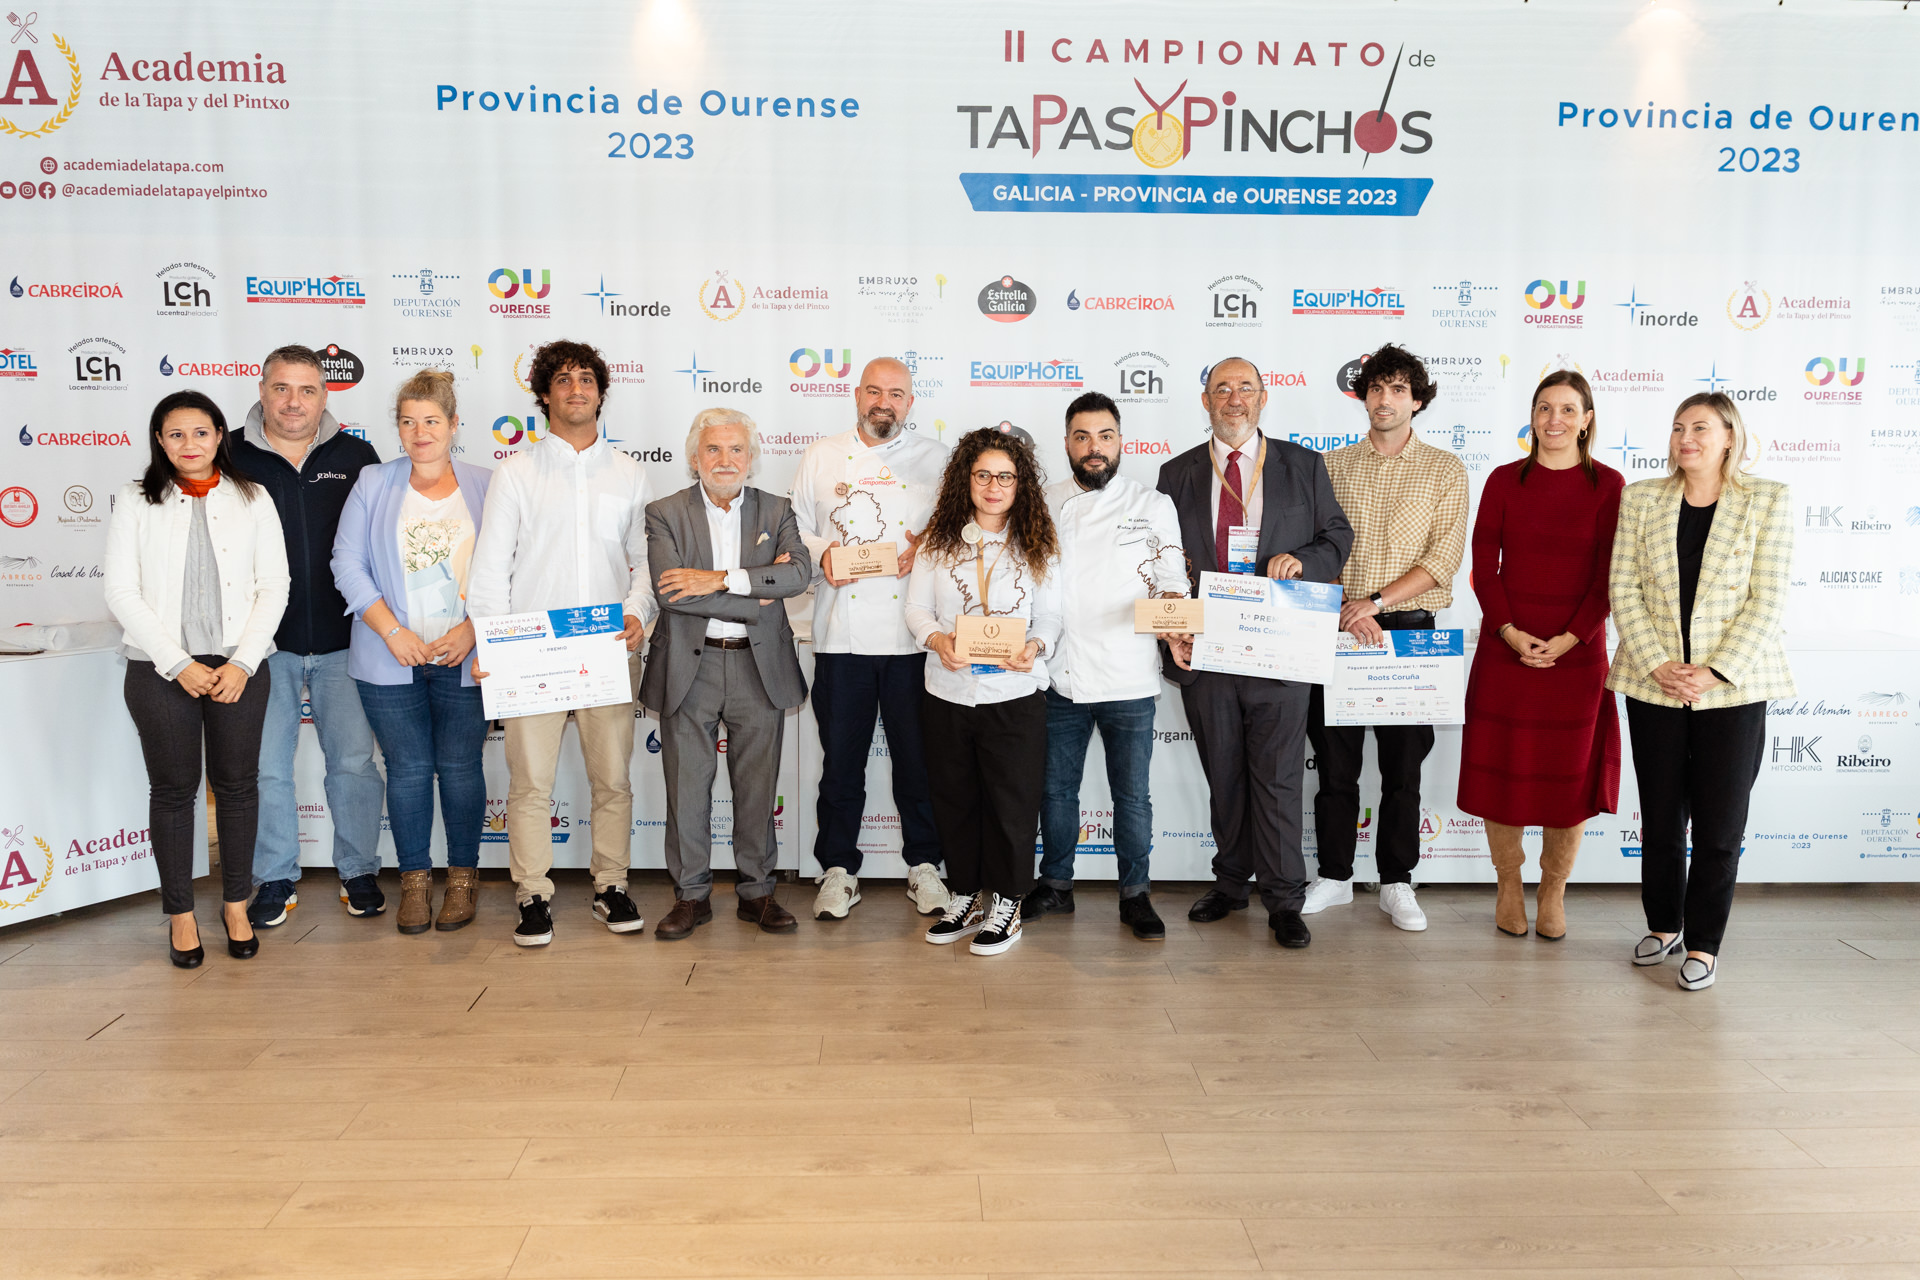 II Campionato de Tapas de Galicia